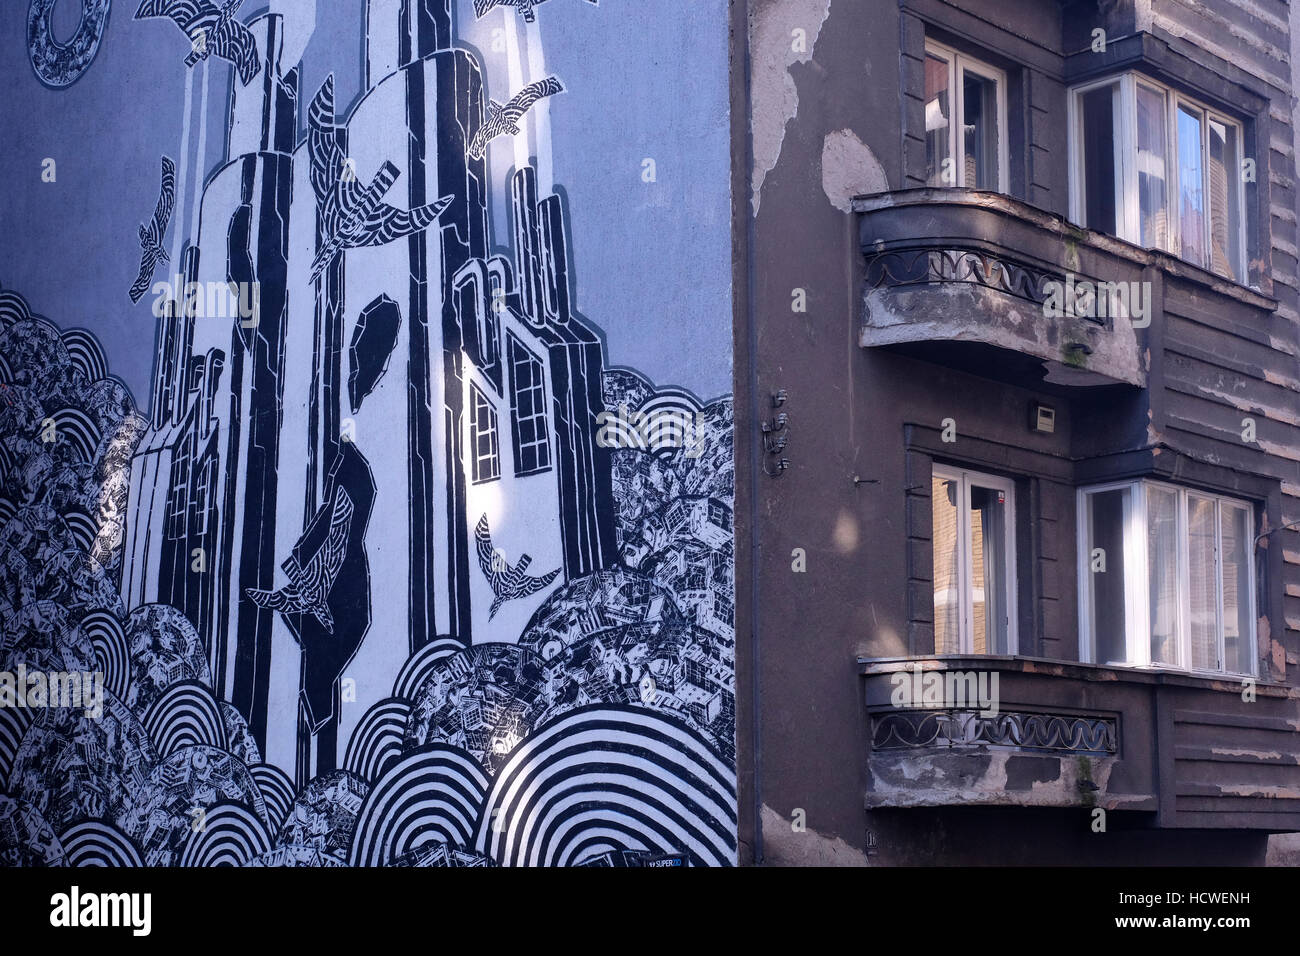 Eine bemalte Wand an der Fassade eines Gebäudes im Zentrum von Belgrad Hauptstadt der Republik Serbien Stockfoto